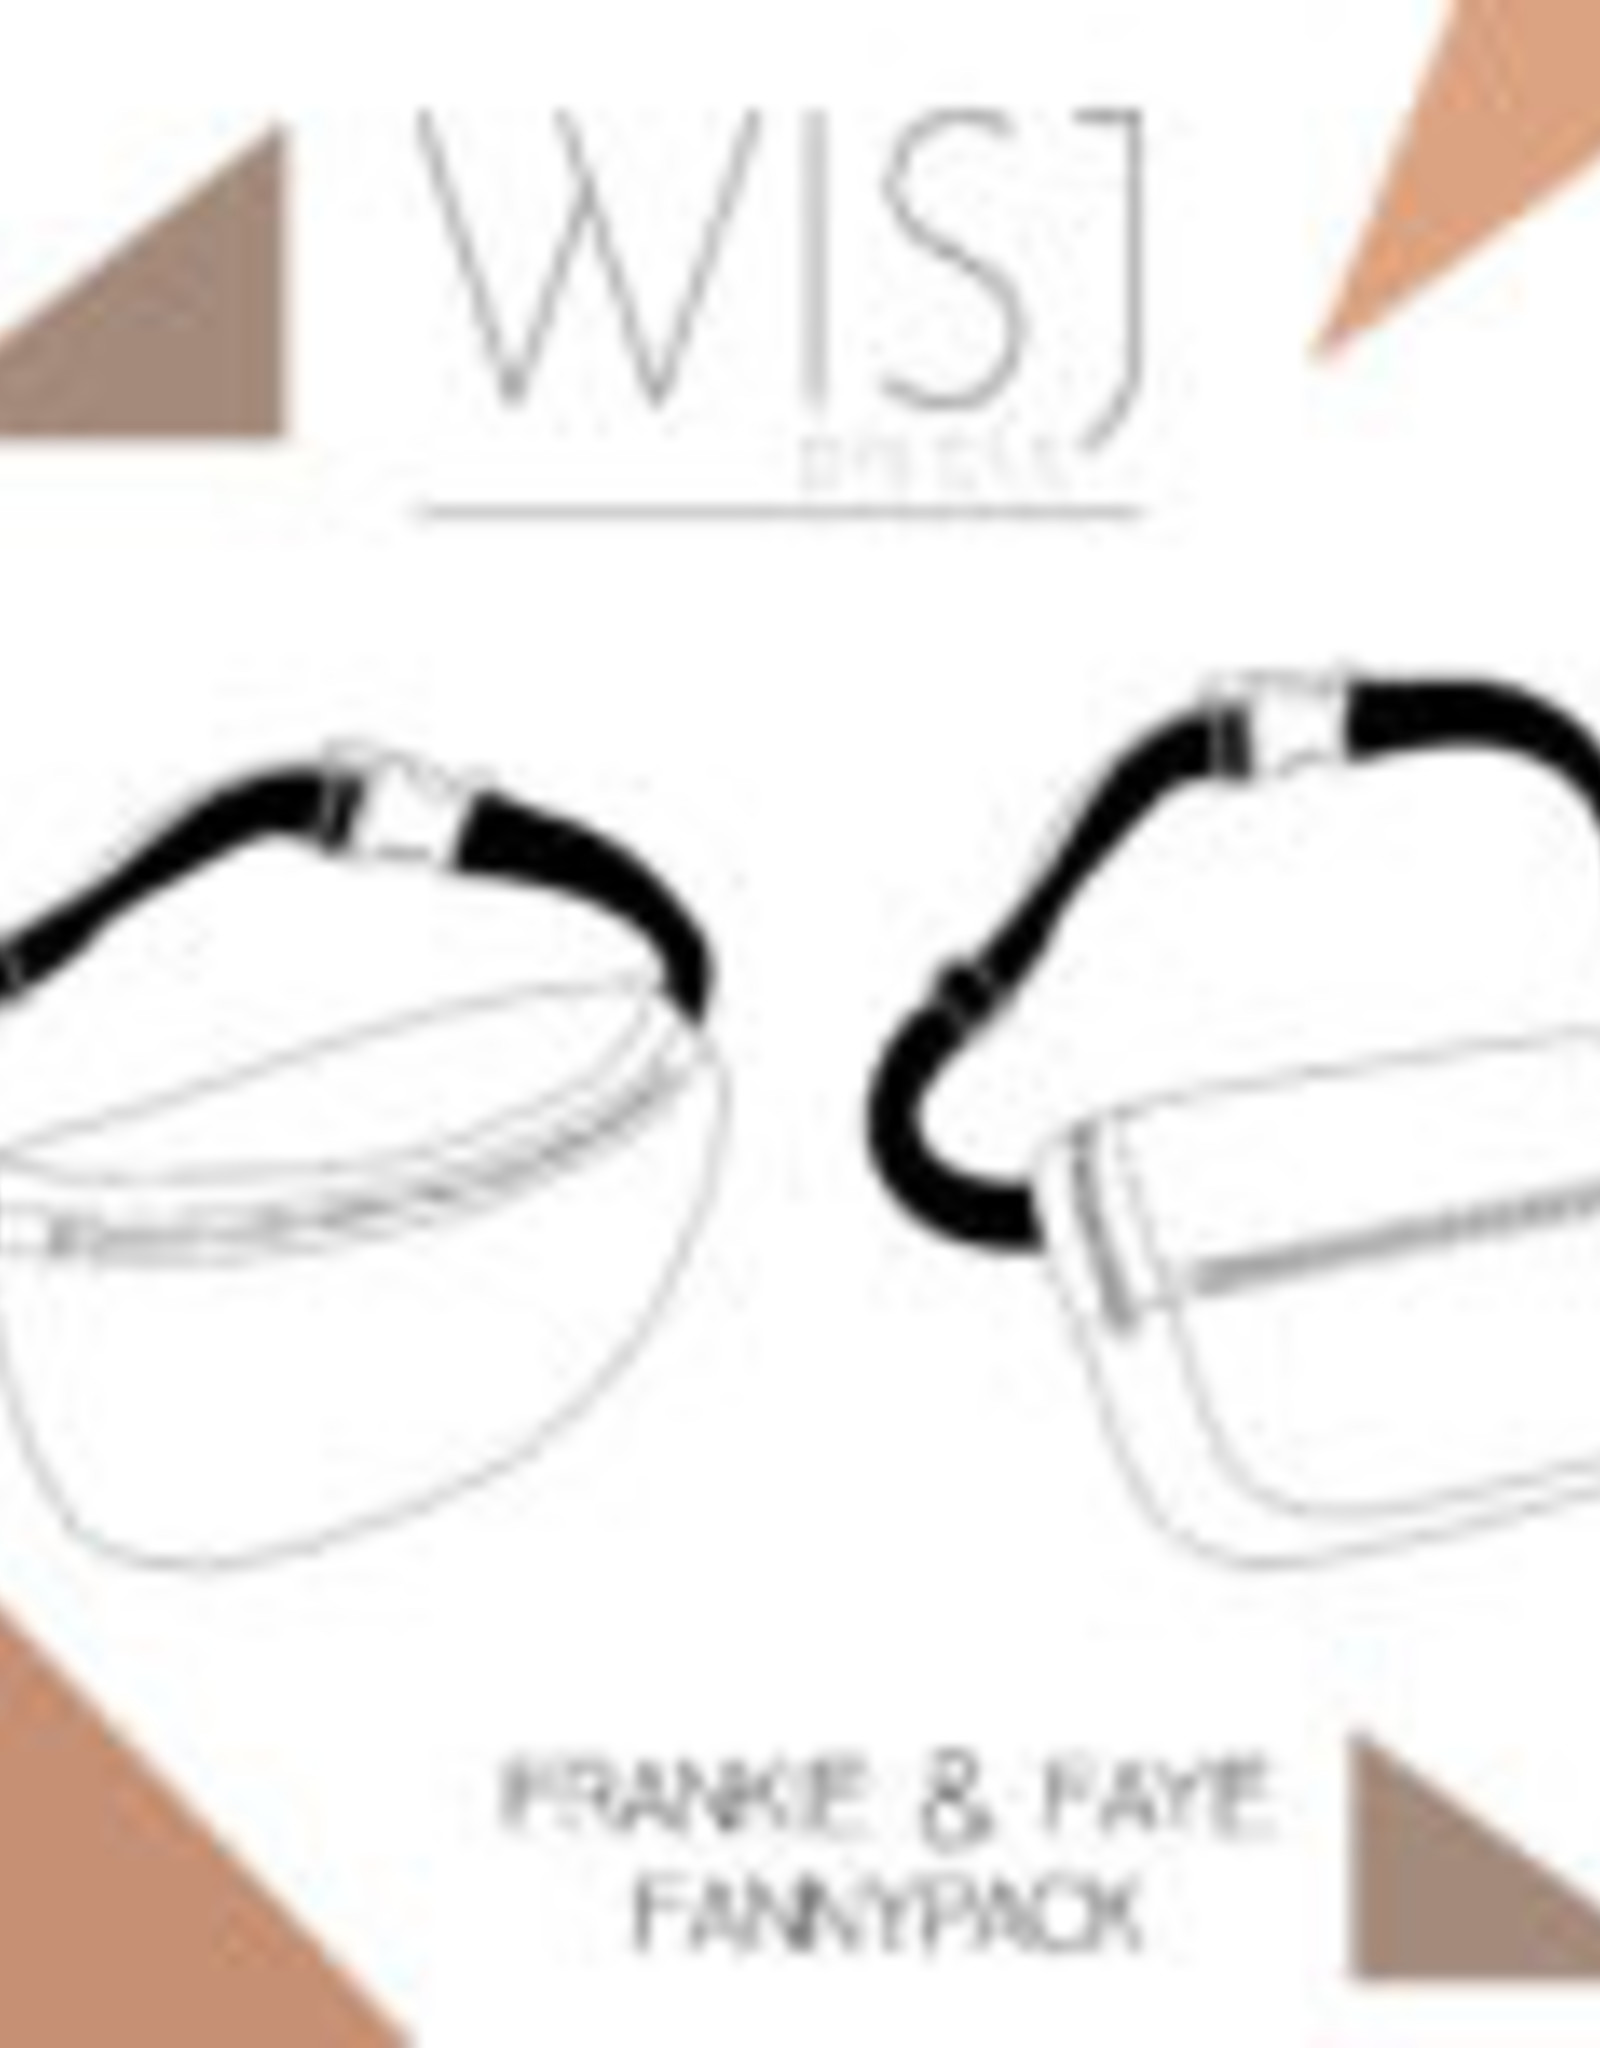 WISJ Patroon WISJ - Frankie & Faye fannypack